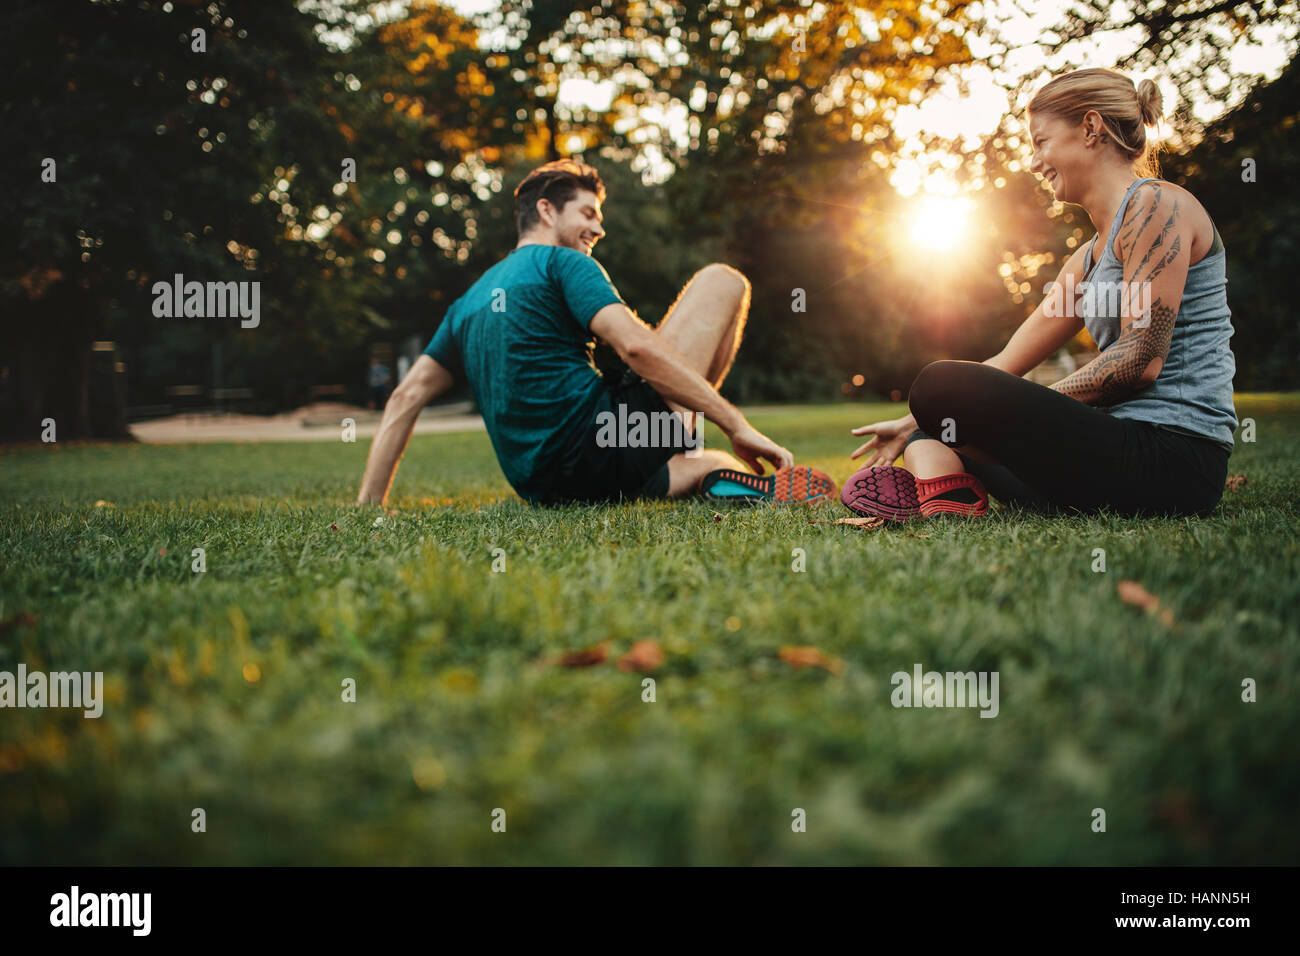 Colocar feliz pareja joven ejercitarse en el parque. Relajarse después de la sesión de entrenamiento físico. Foto de stock